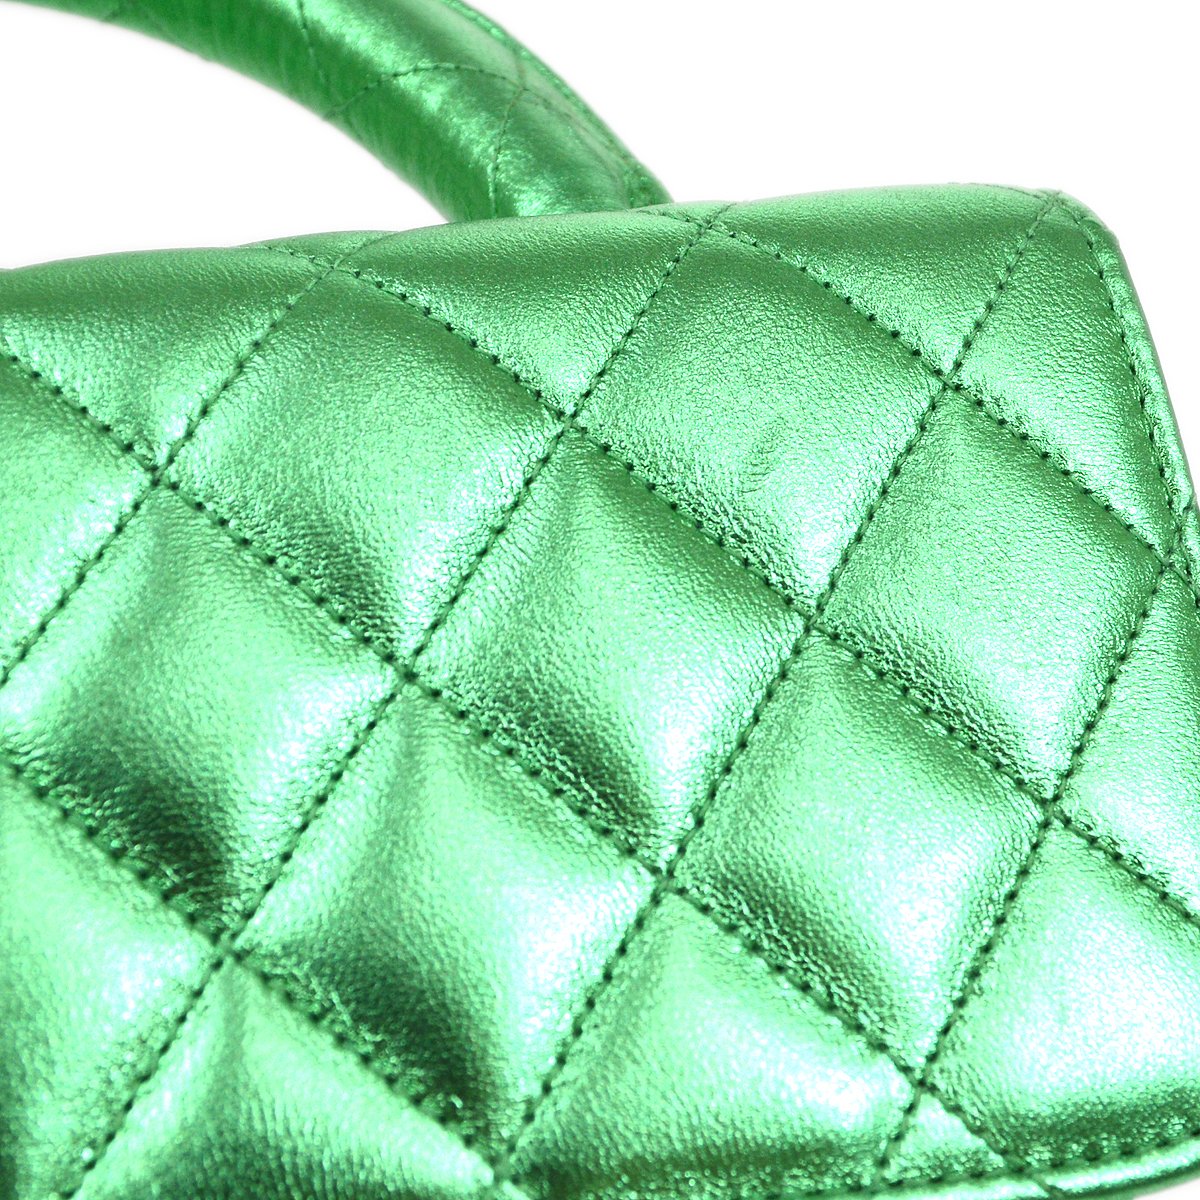 Chanel Green Handbag - 160 For Sale on 1stDibs  green chanel bag, chanel  bag green color, chanel emerald green